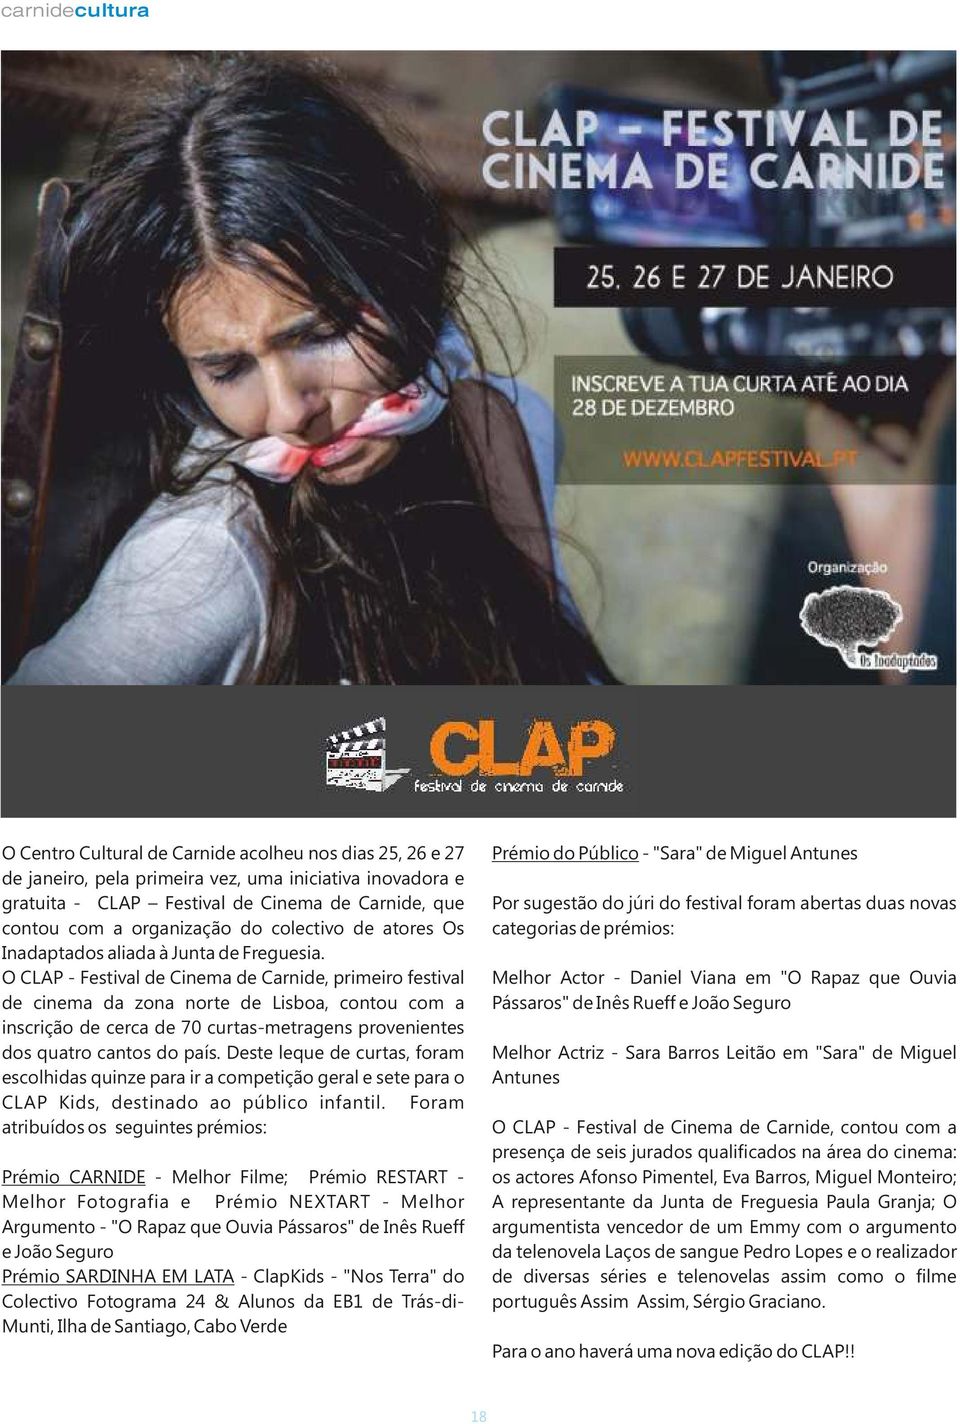 O CLAP - Festival de Cinema de Carnide, primeiro festival de cinema da zona norte de Lisboa, contou com a inscrição de cerca de 70 curtas-metragens provenientes dos quatro cantos do país.